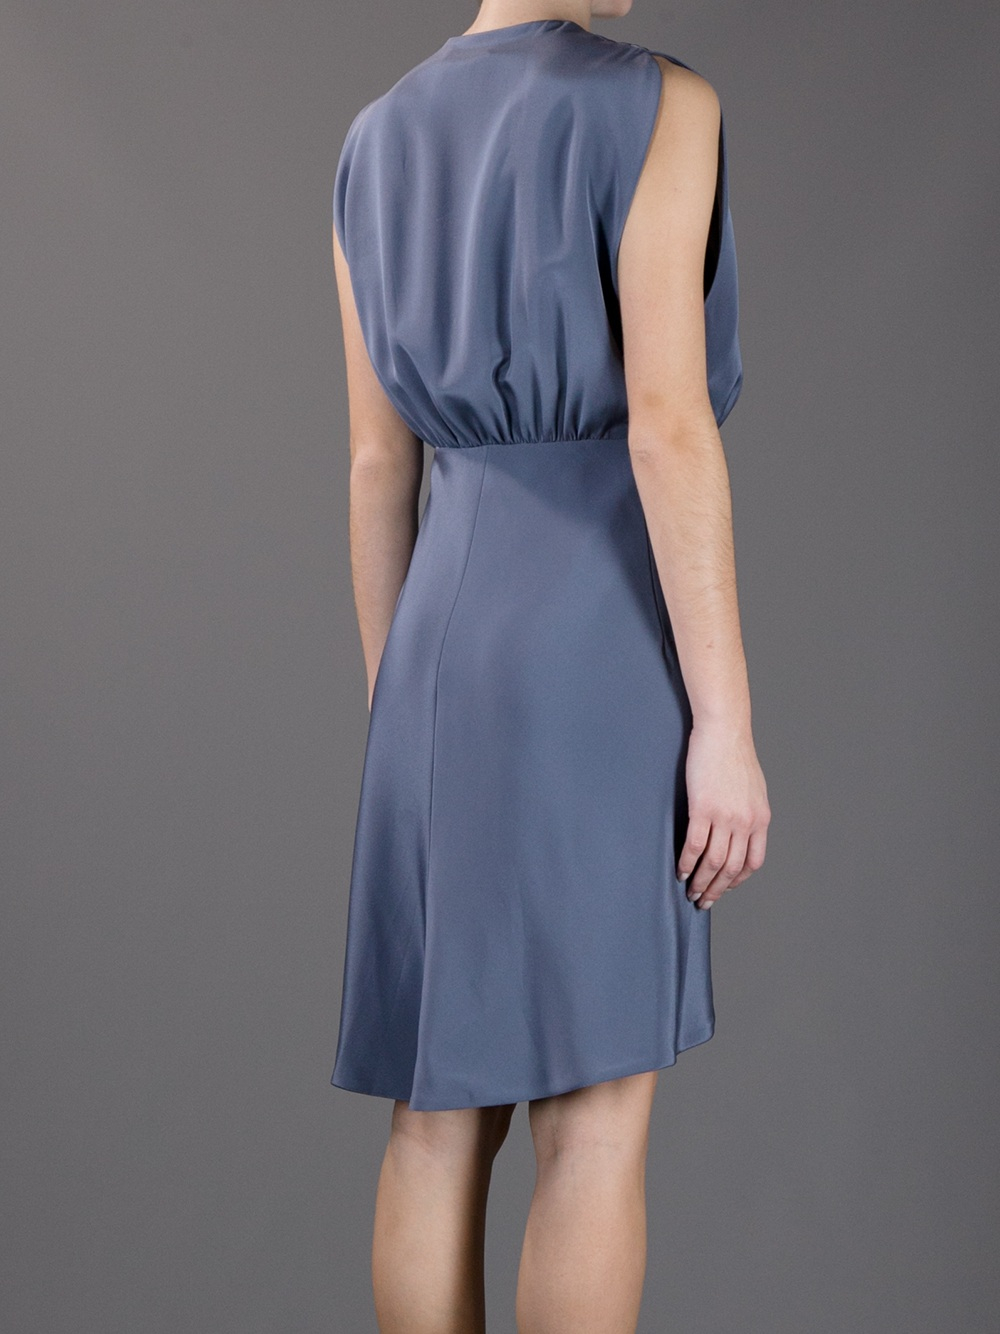 Lyst - Balenciaga Silk Wrap Dress in Gray